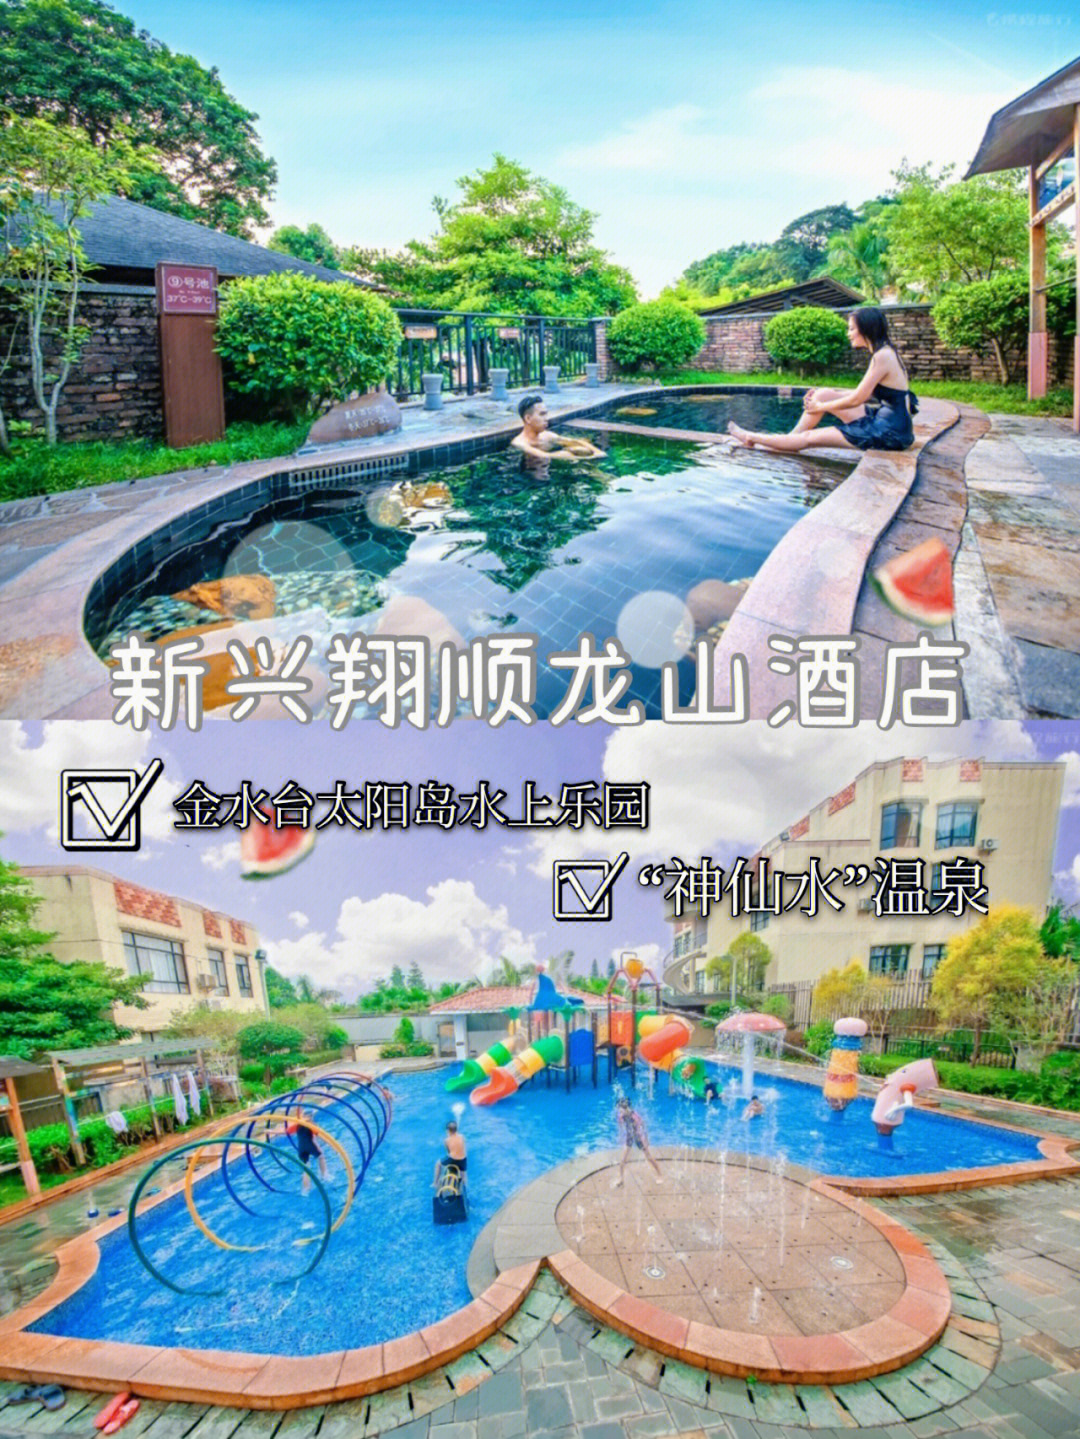 新兴龙山温泉酒店电话图片